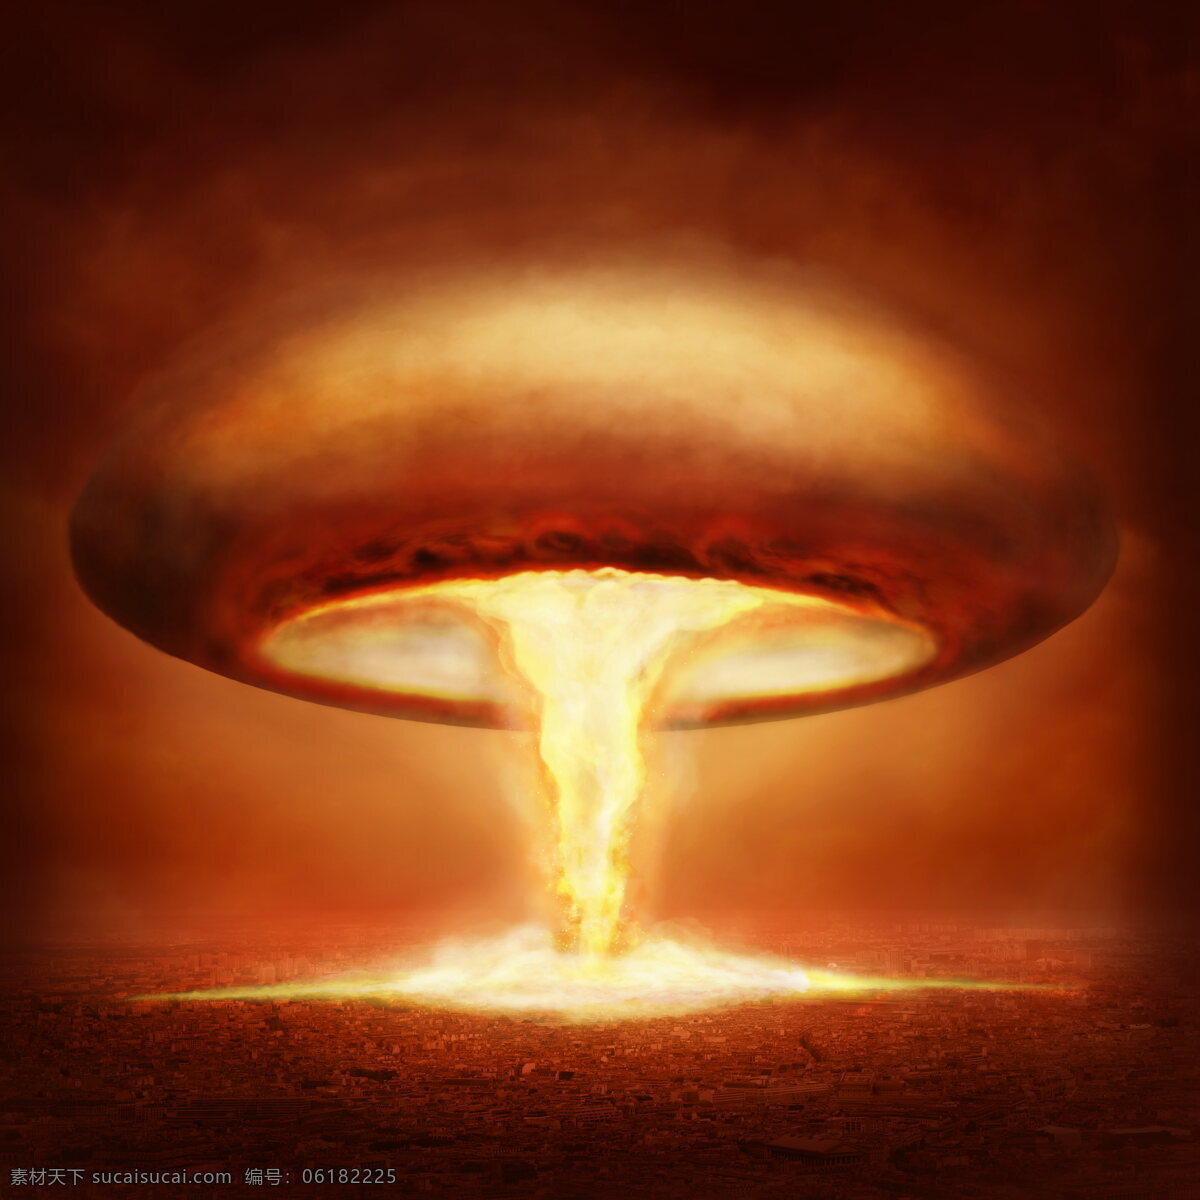 核武器 核 核爆炸 原子弹 氢弹 核战争 蘑菇云 云朵 爆炸 战争 灾难 恐怖 军事 武器 现代科技 军事武器